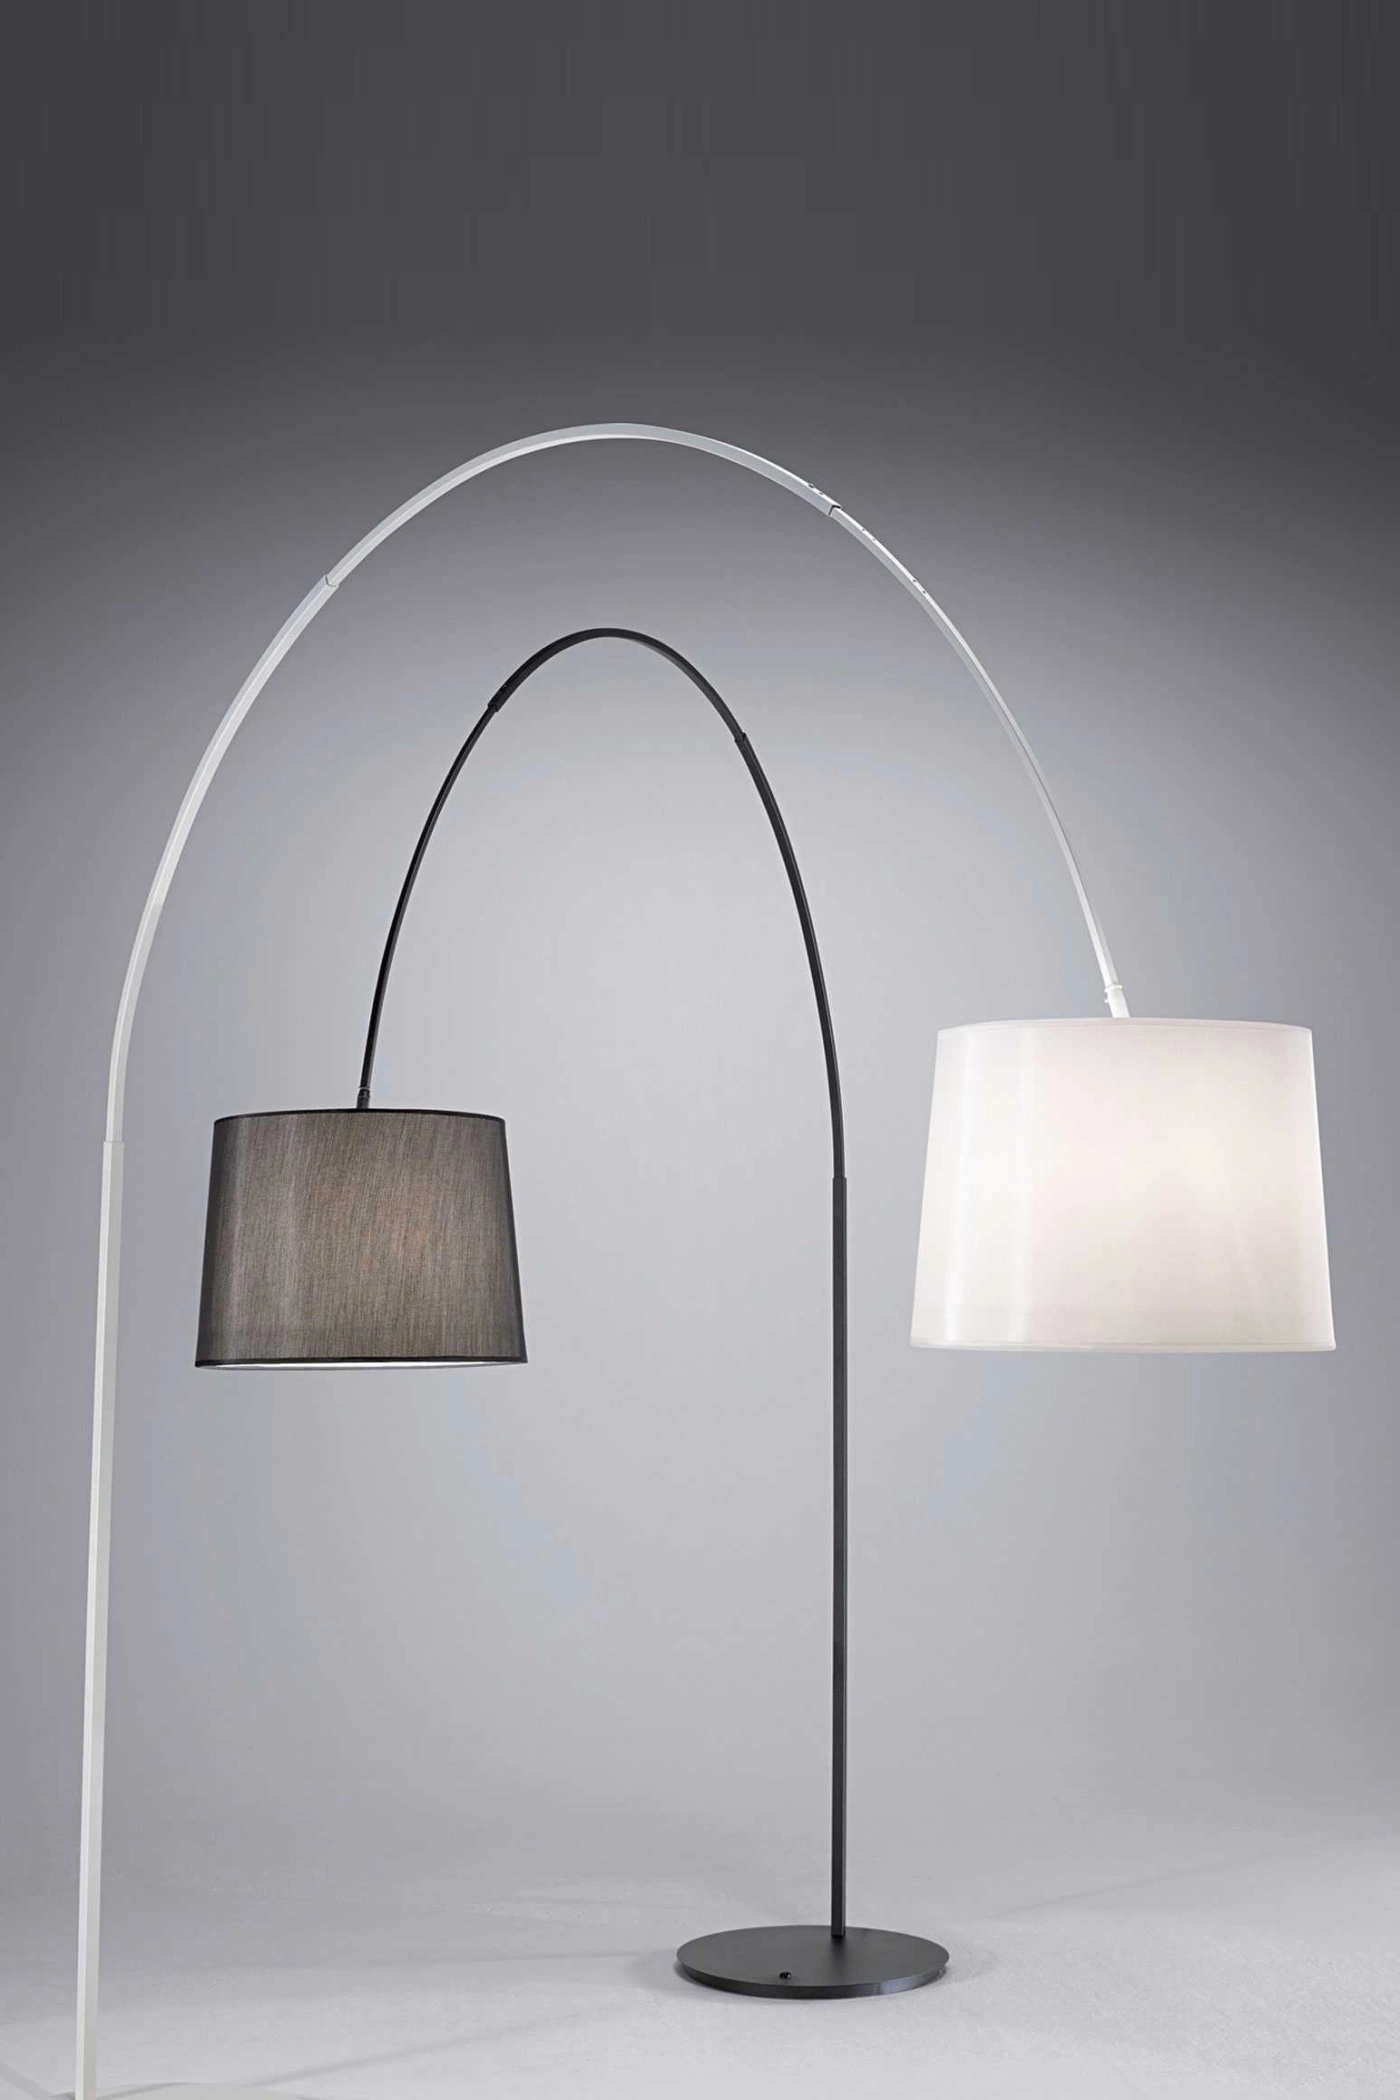   
                        
                        Торшер IDEAL LUX (Італія) 10208    
                         у стилі Хай-тек.  
                        Тип джерела світла: світлодіодна лампа, змінна.                                                                                                  фото 2